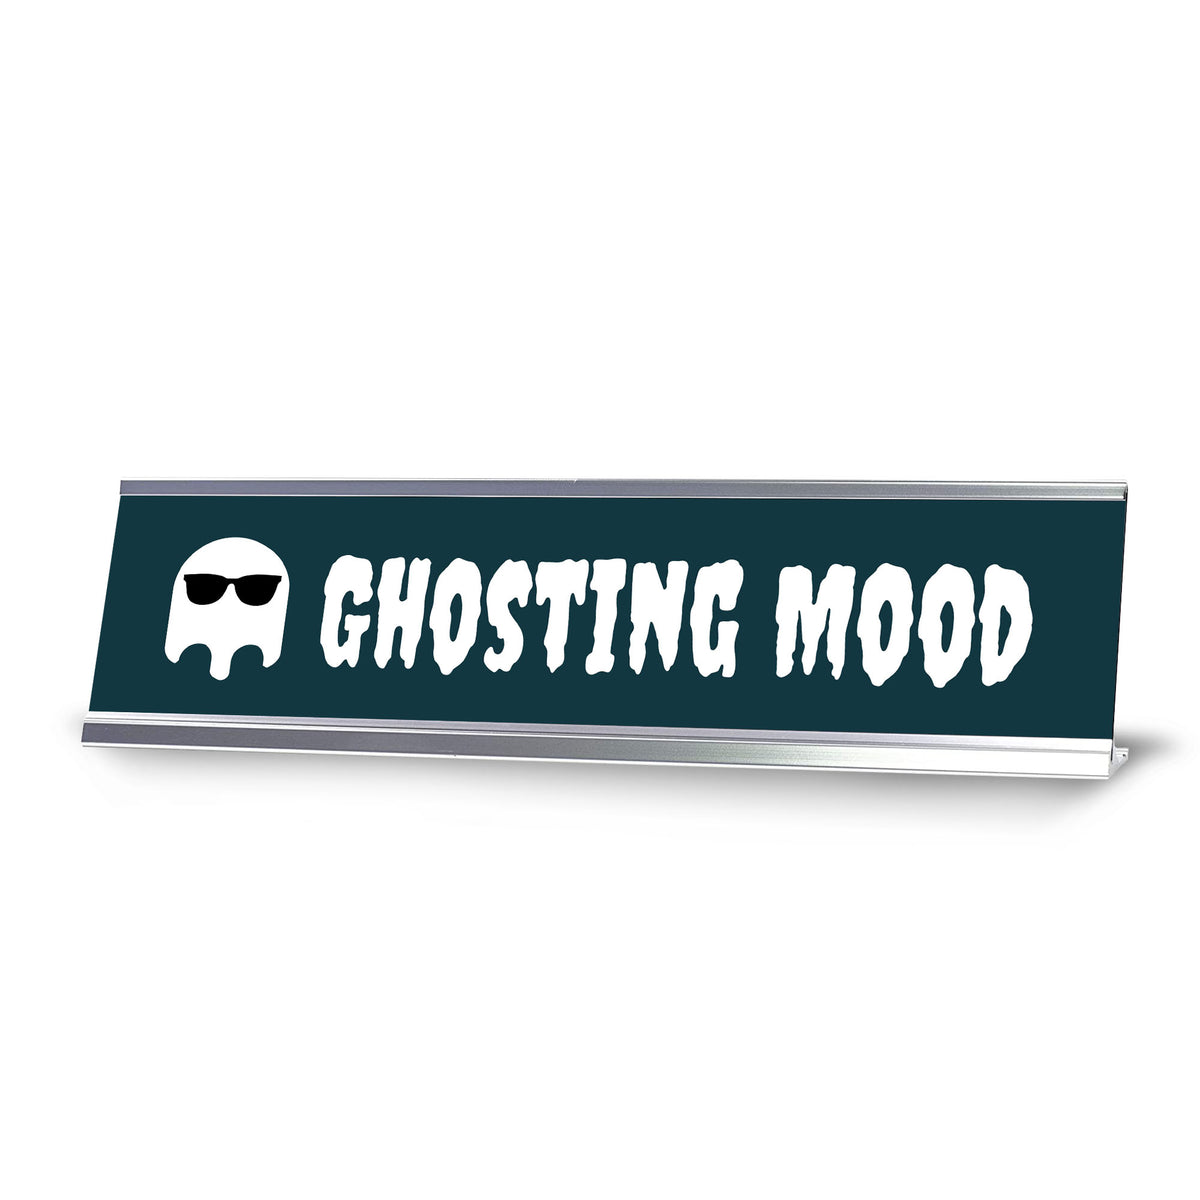 Ghosting mood, Silver Frame Desk Sign (2x8)